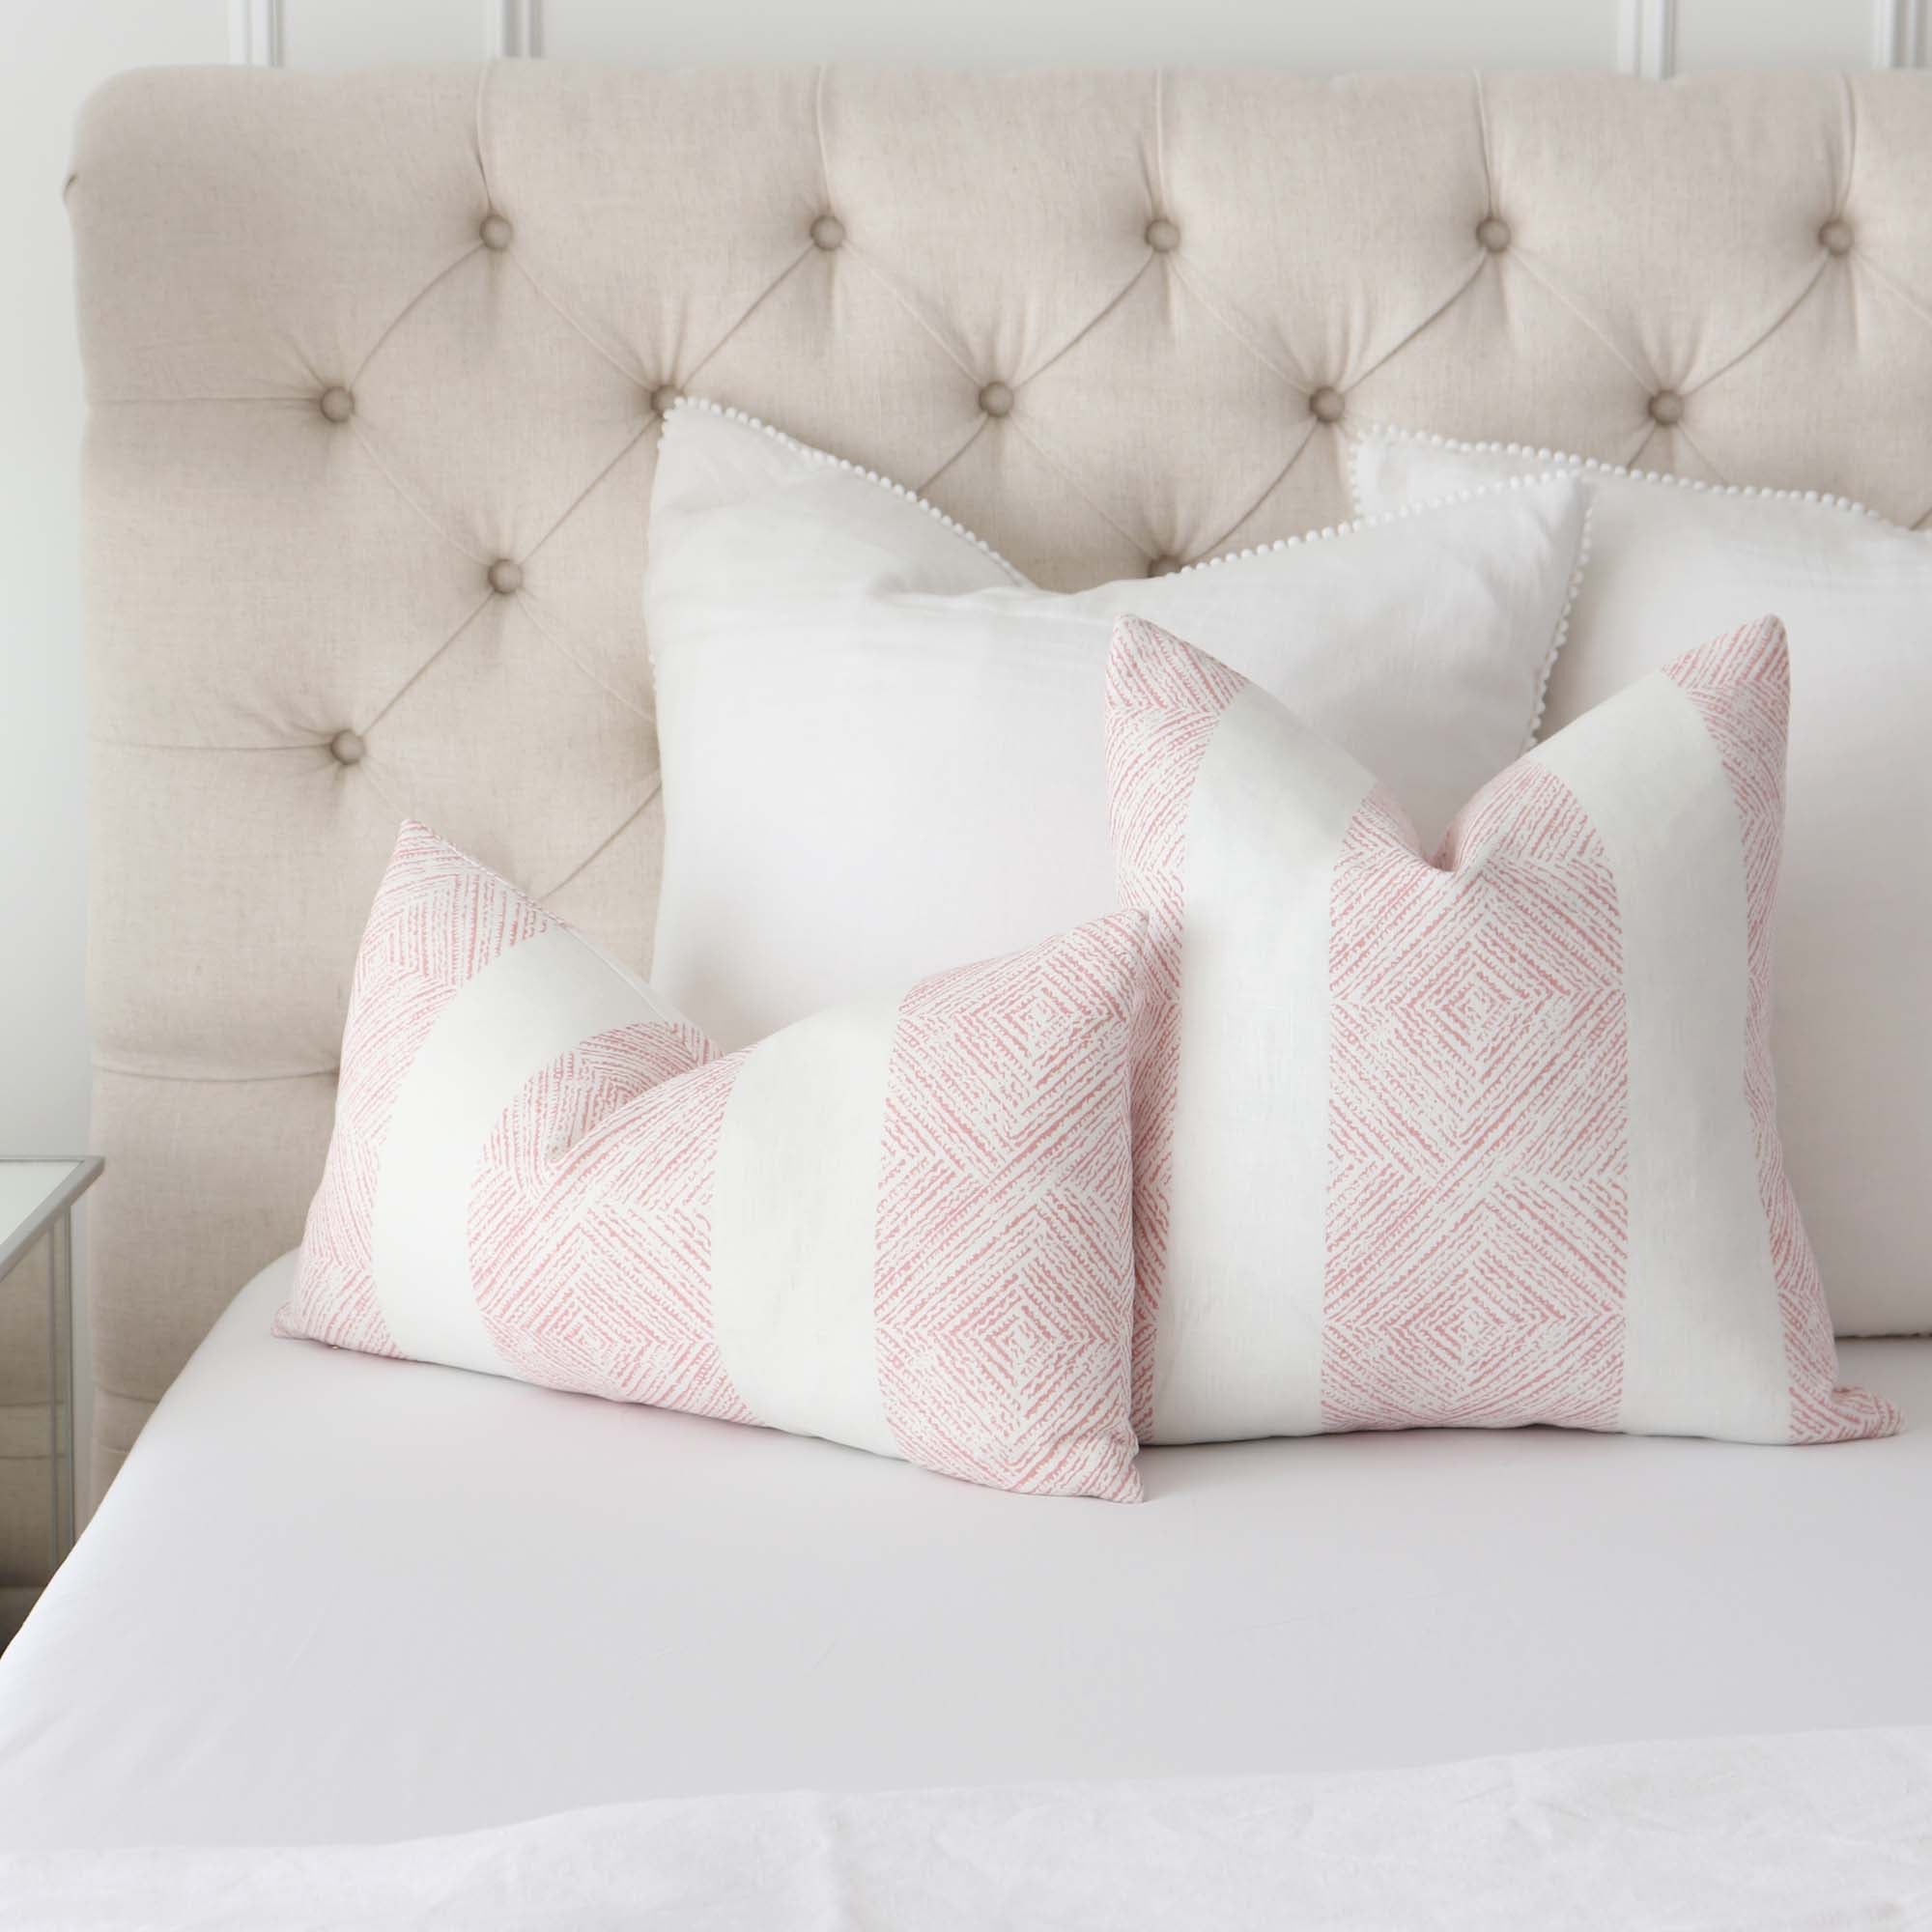 Thibaut Clipperton Stripe Blush Pink Designer Luxury Throw Pillow Cover with Matching Euro White Linen Throw Pillows